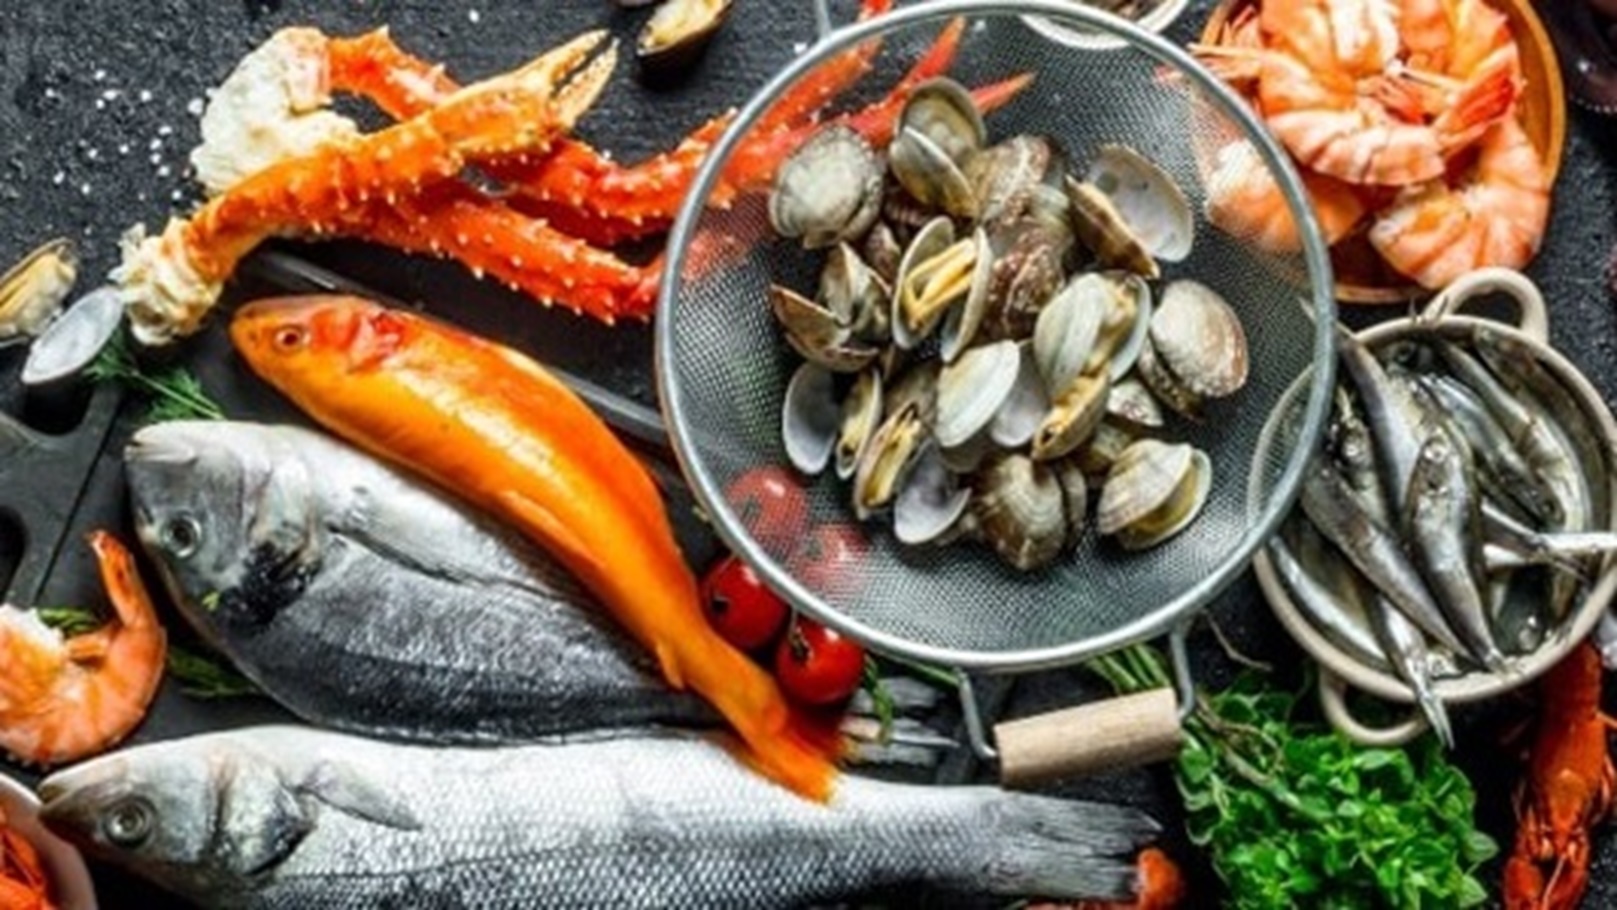 دراسة حديثة تكشف عن نقص كبير في المأكولات البحرية والتوجه الى